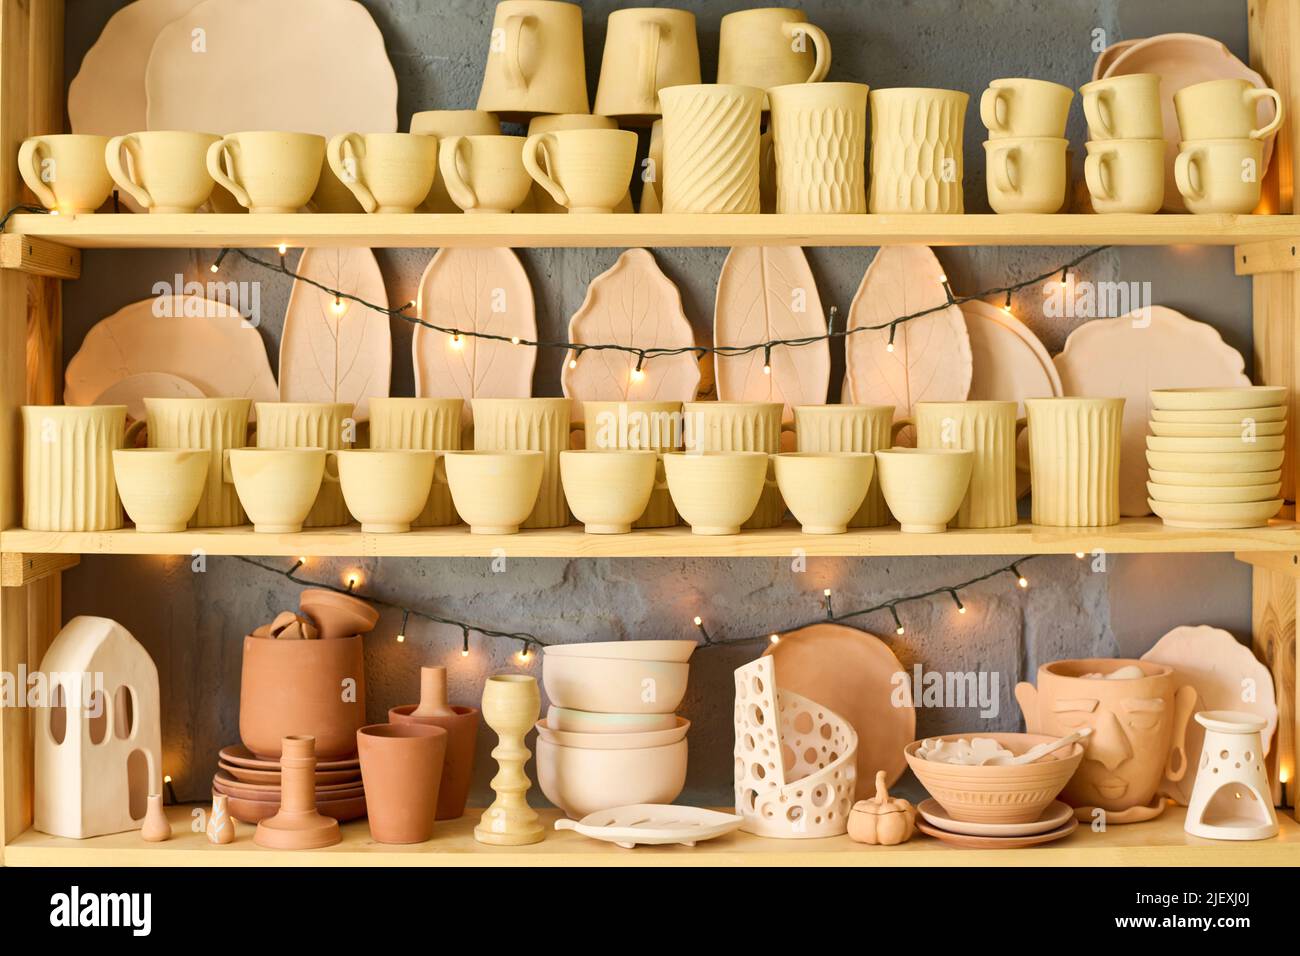 Großes Display mit einer Vielzahl von handgefertigten Steingut- und Tonwaren wie Tassen, Schüsseln, Töpfen und Tellern zum Verkauf in einem kleinen Handwerksladen Stockfoto